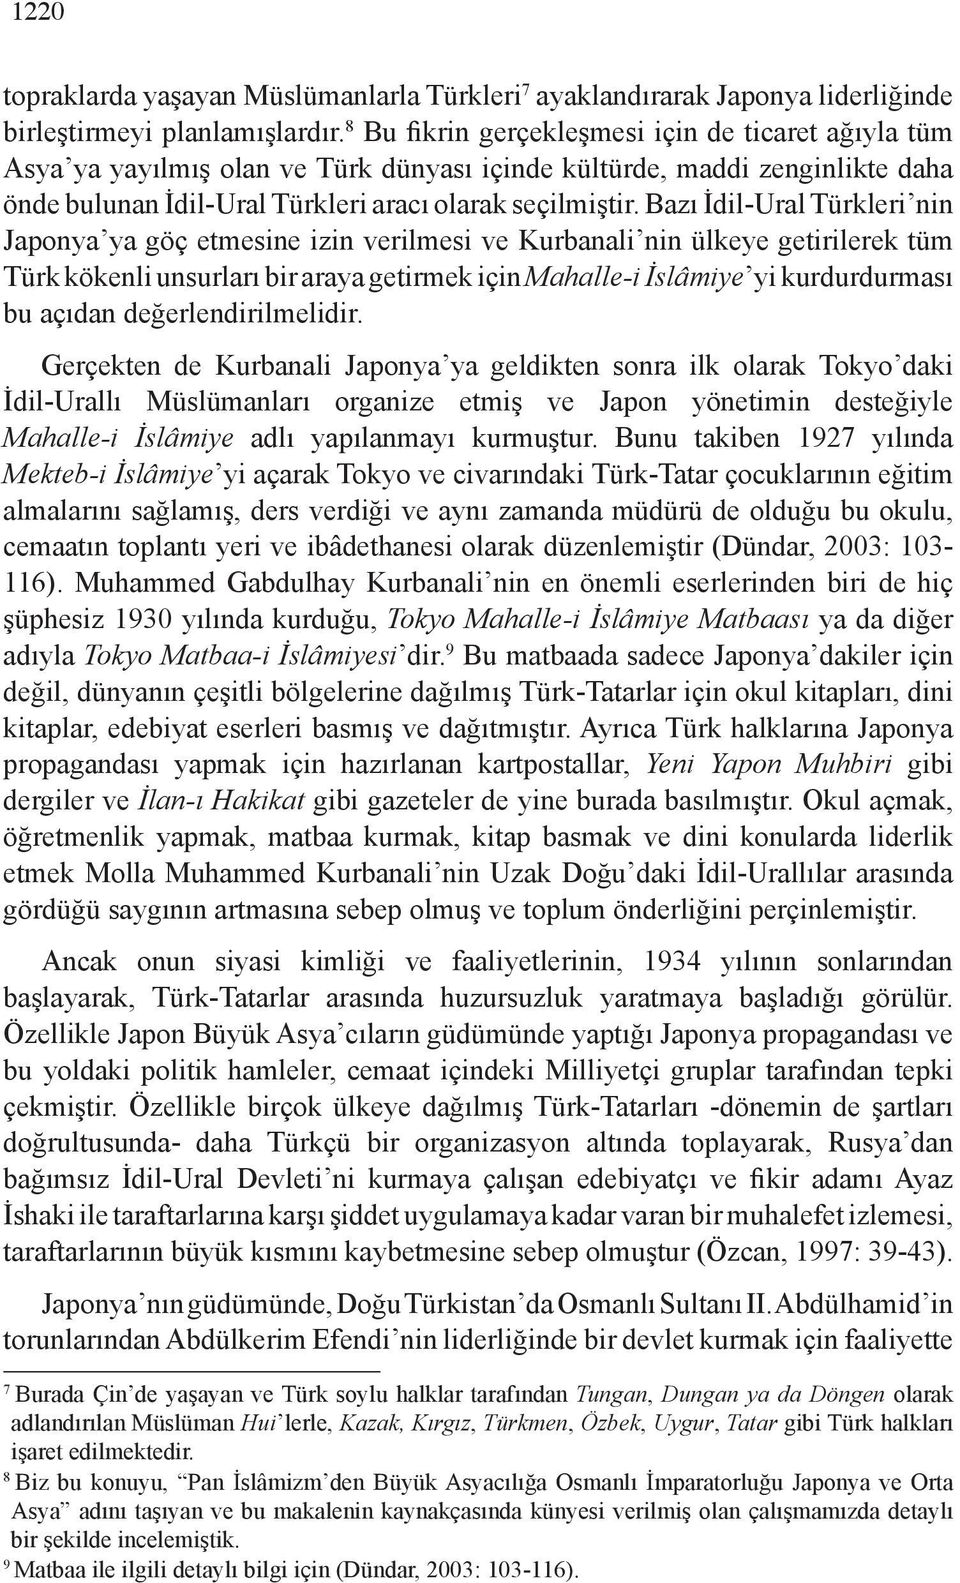 Bazı İdil-Ural Türkleri nin Japonya ya göç etmesine izin verilmesi ve Kurbanali nin ülkeye getirilerek tüm Türk kökenli unsurları bir araya getirmek için Mahalle-i İslâmiye yi kurdurdurması bu açıdan